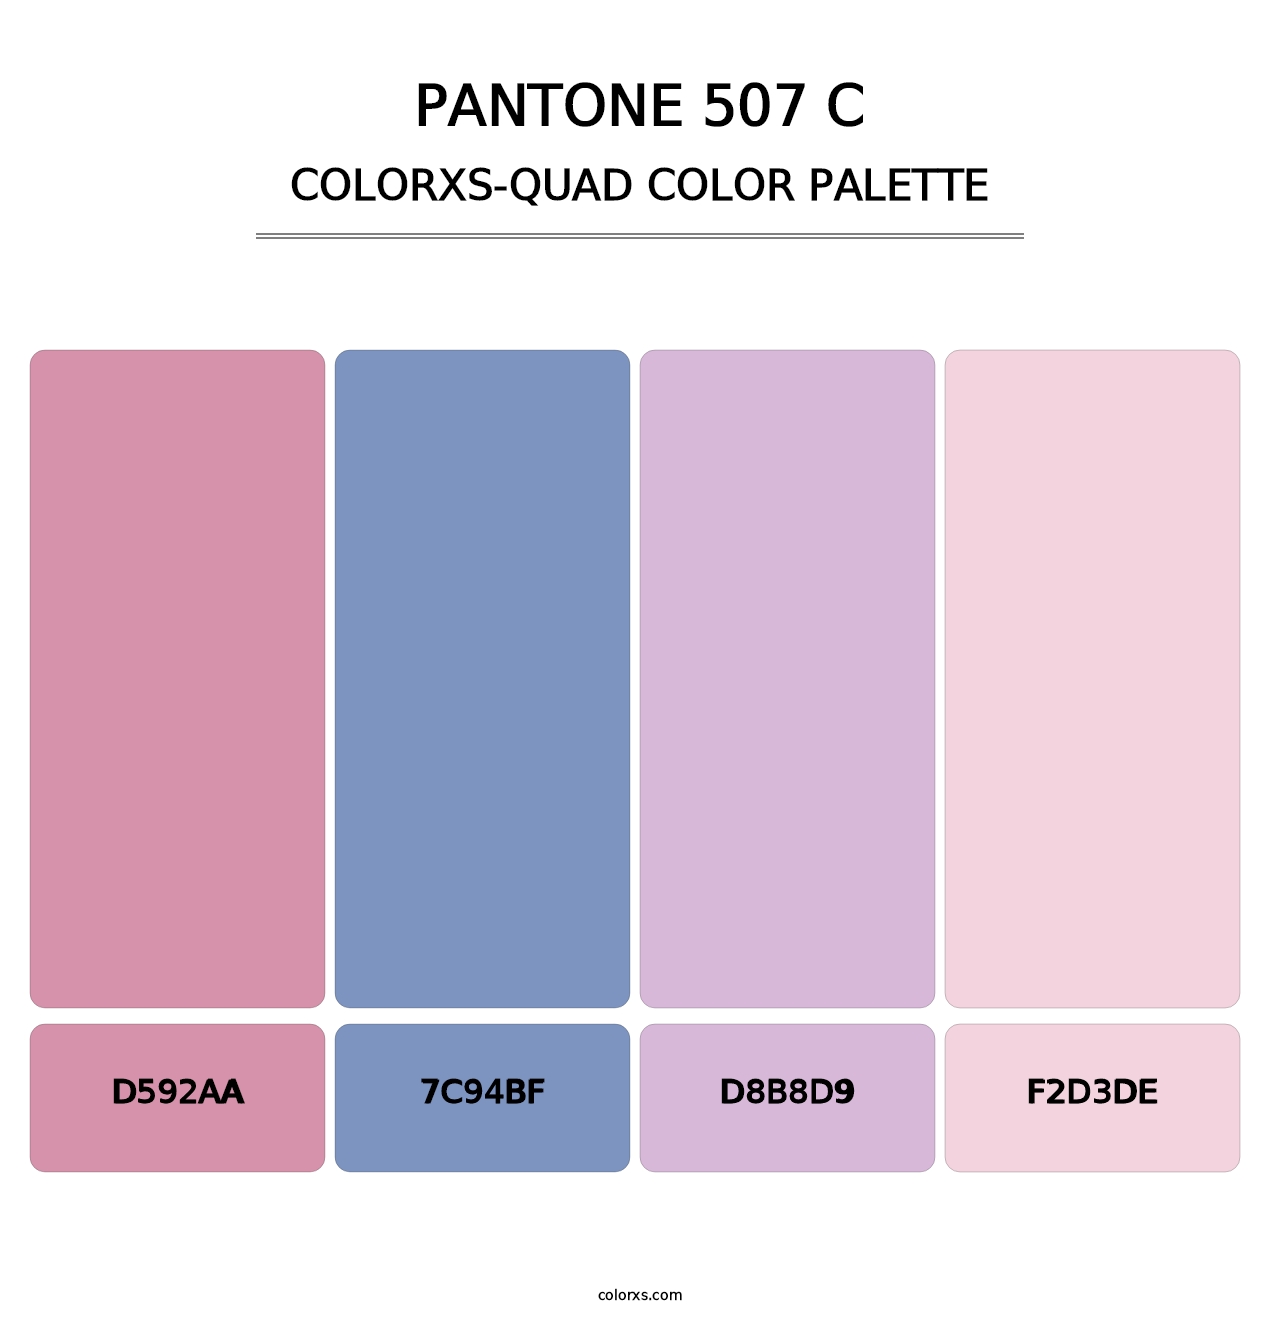 PANTONE 507 C - Colorxs Quad Palette